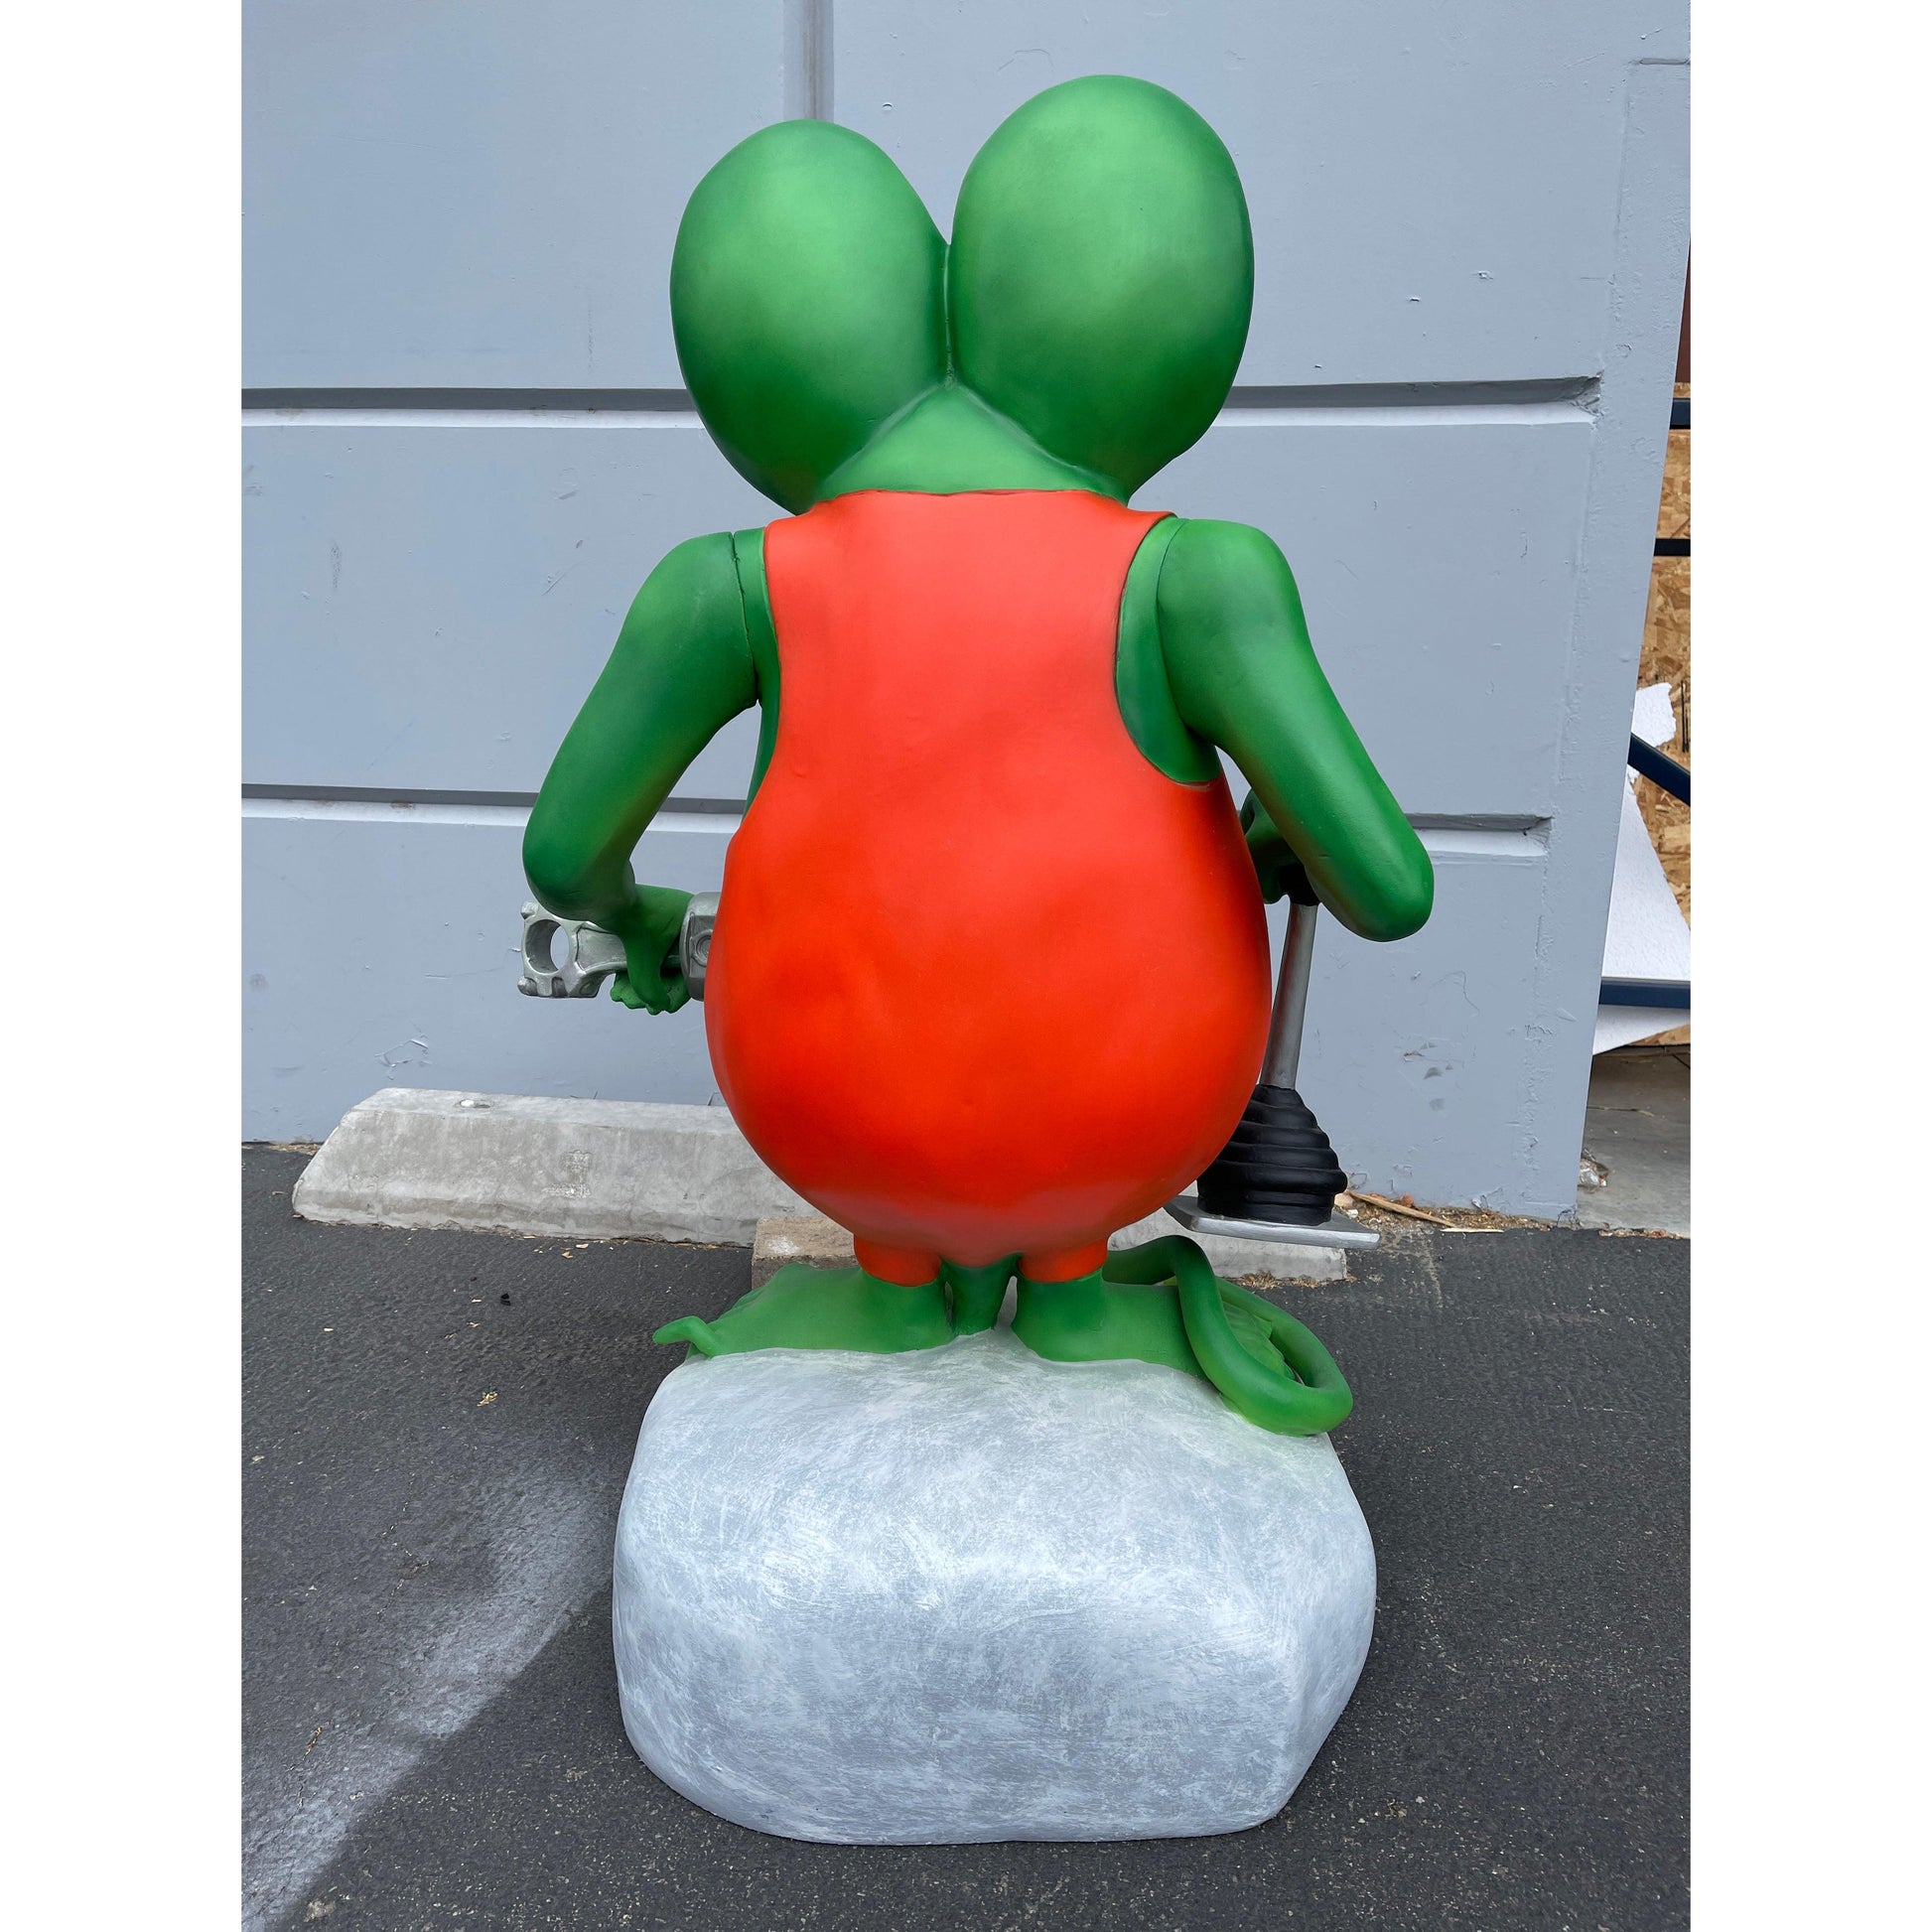 Mechanic Green Rat Statue - LM Treasures Prop Rentals 